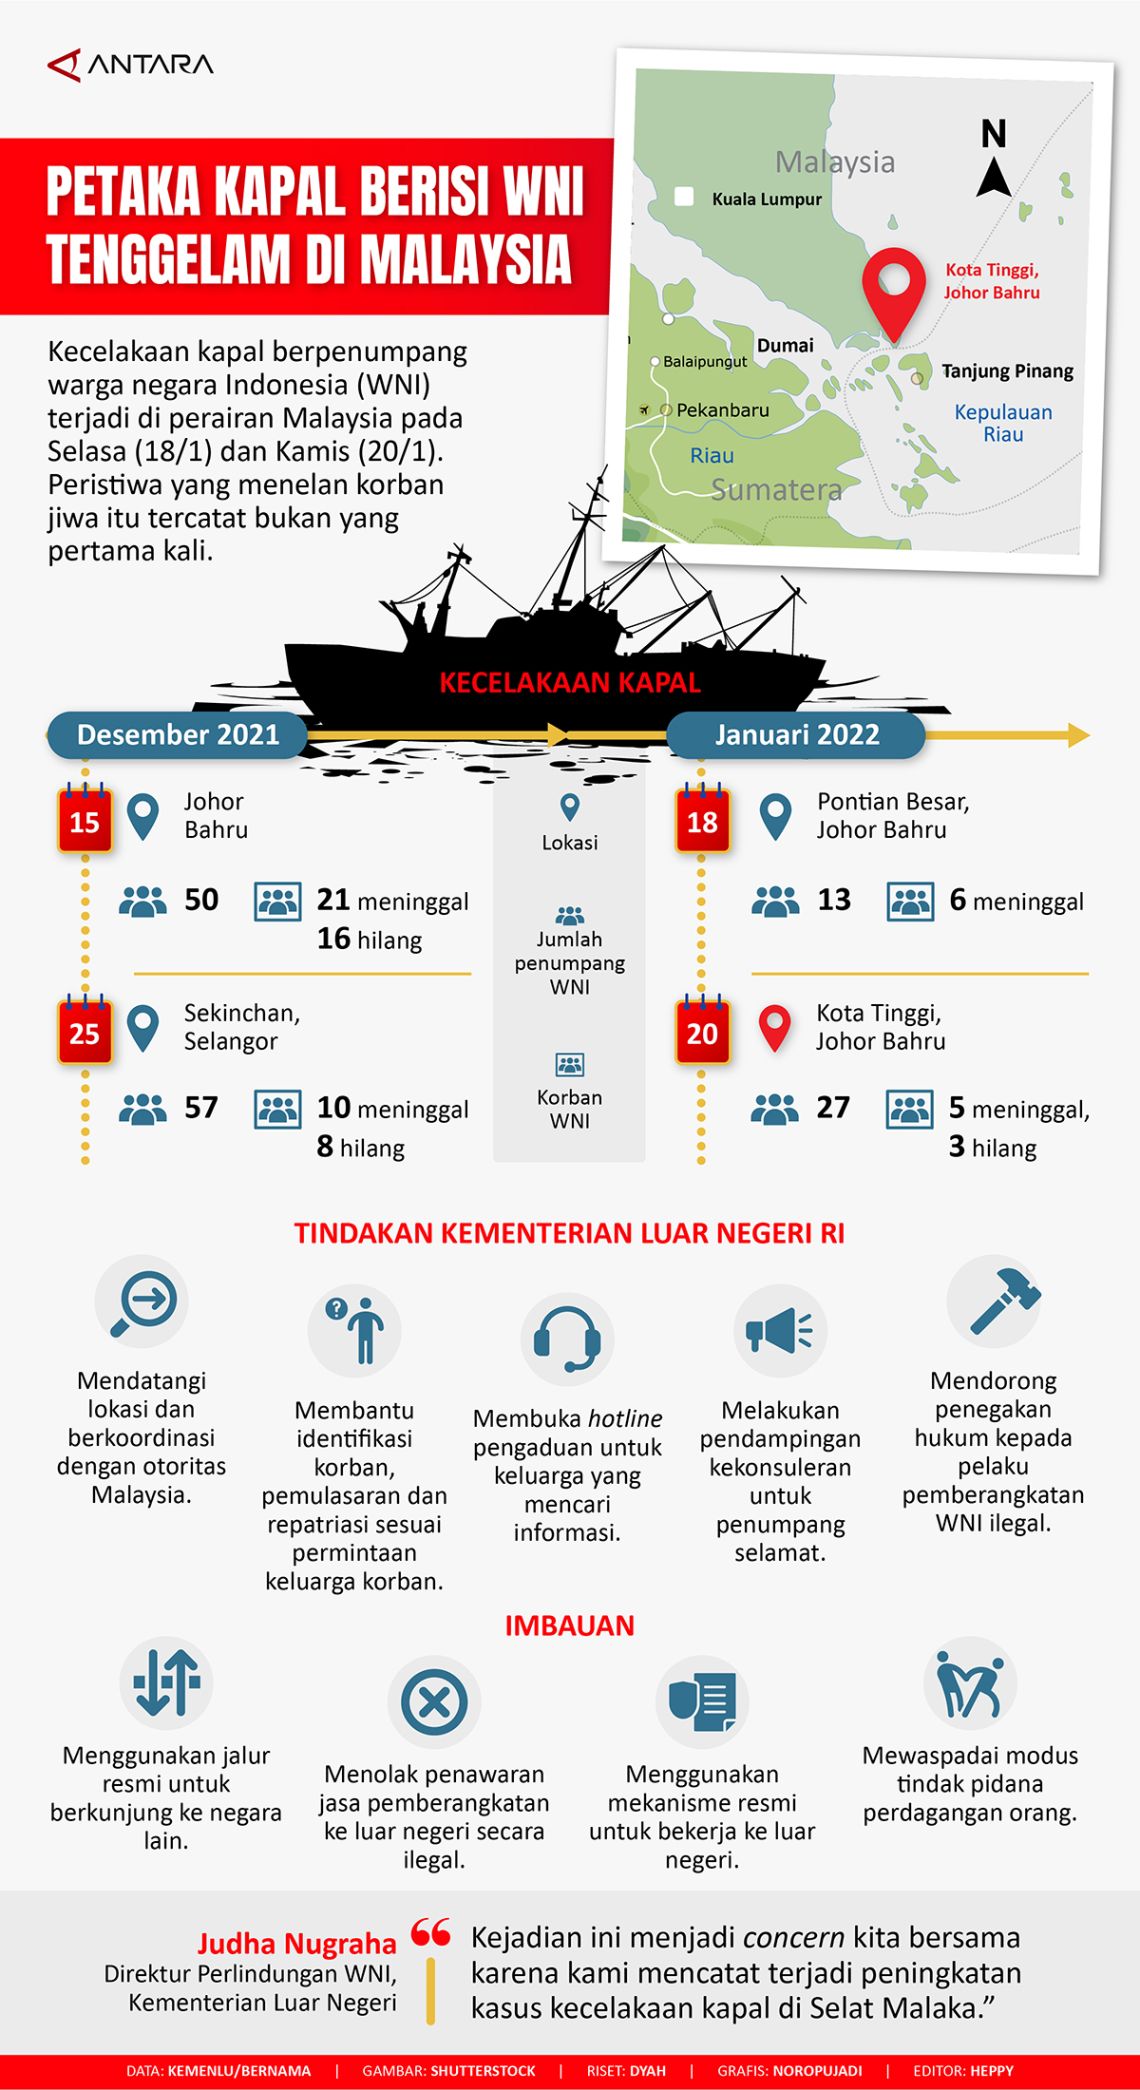 Petaka kapal berisi WNI tenggelam di Malaysia